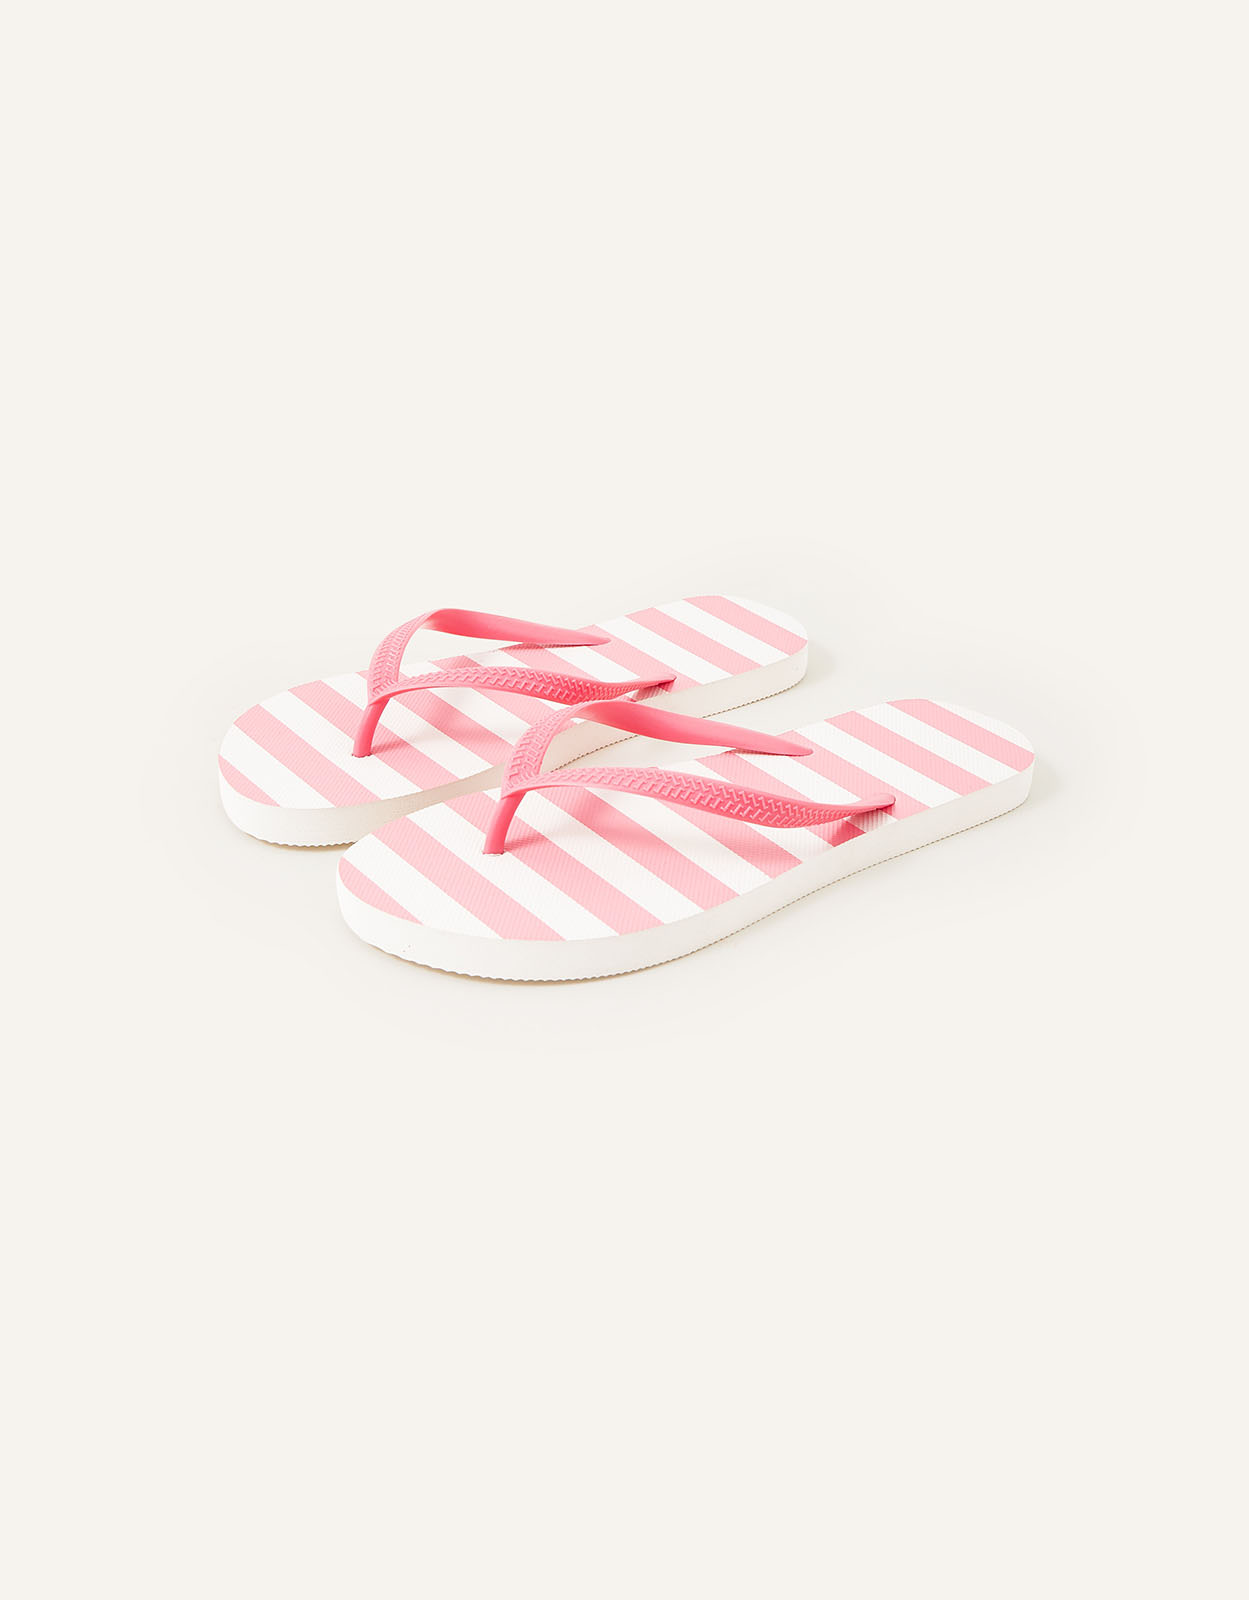 Accessorize Women's Stripe Flip Flops Pink, Size: S